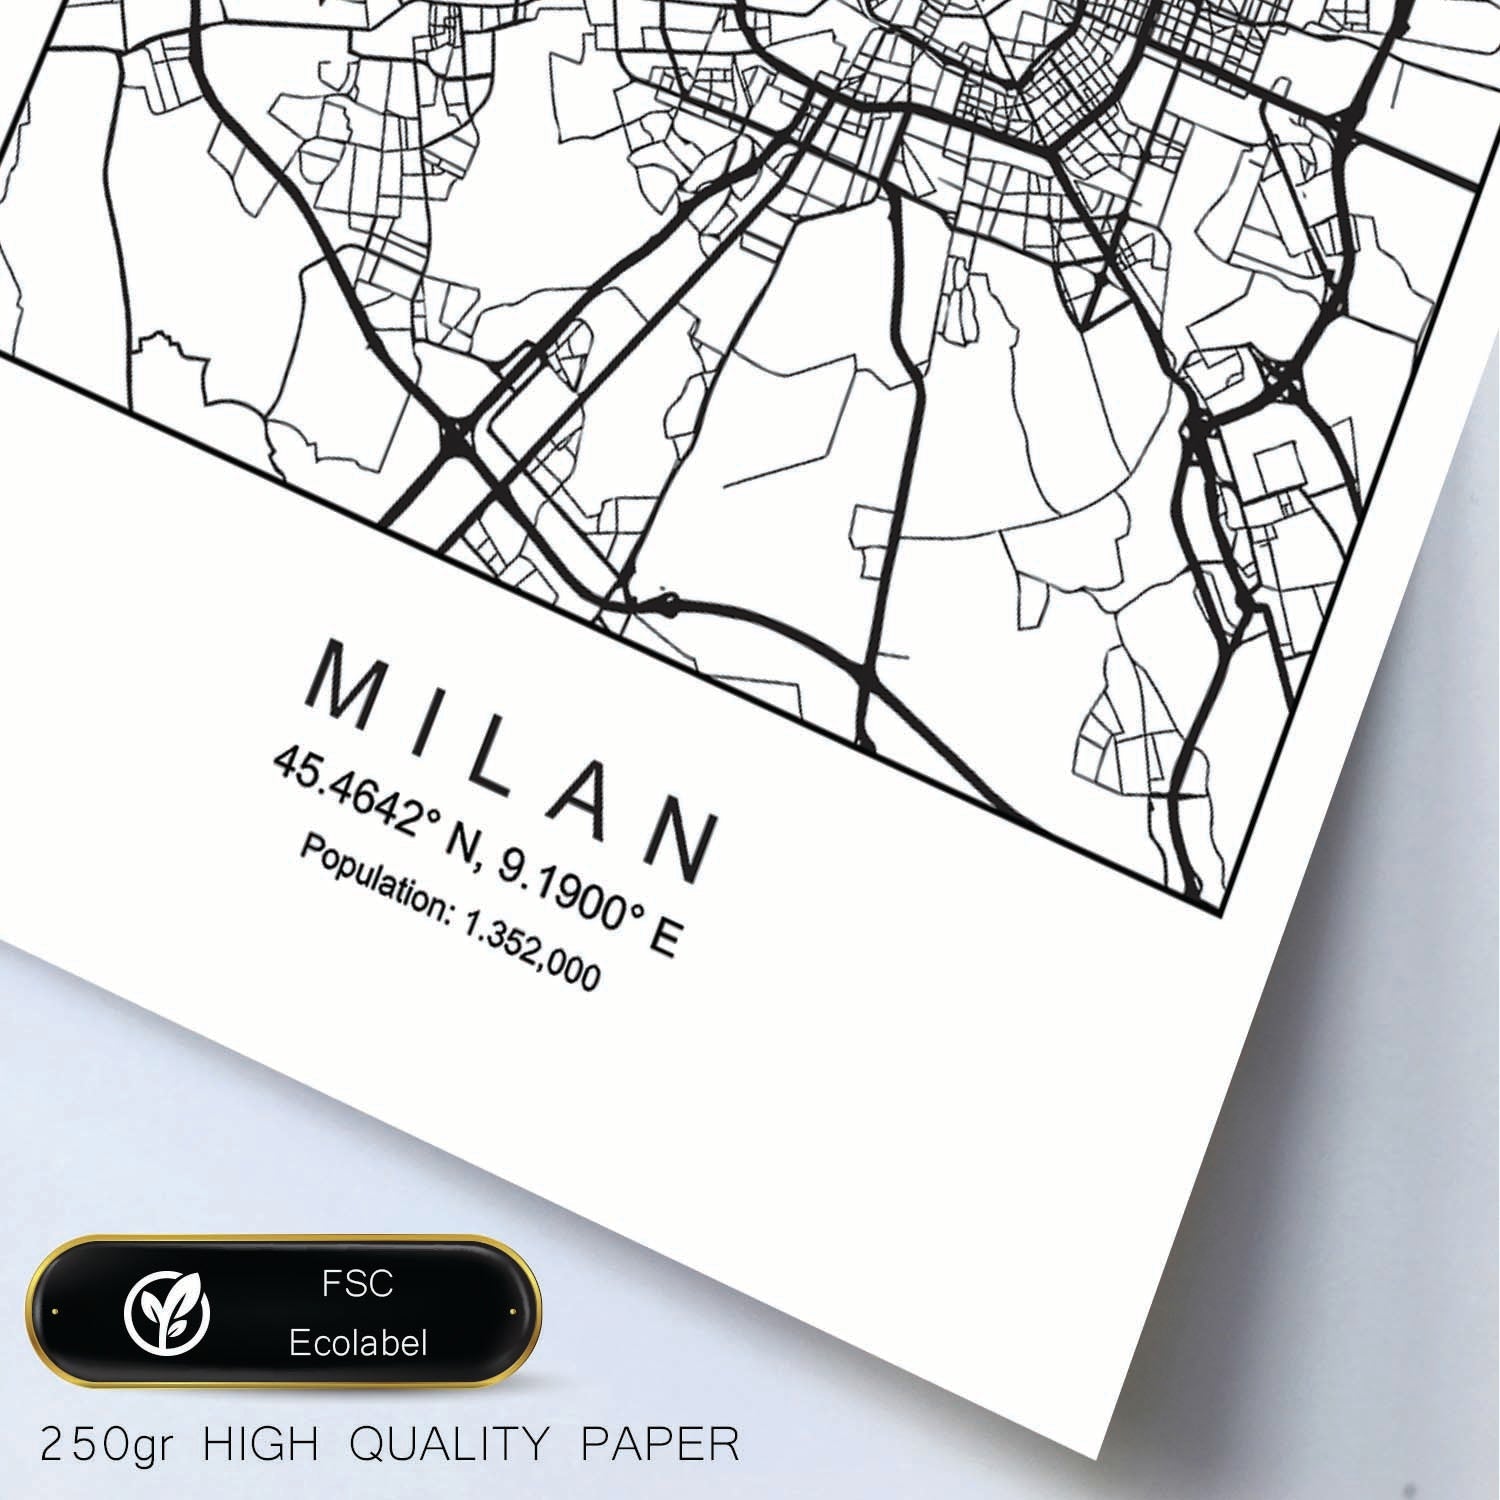 Lámina mapa de la ciudad Milan estilo nordico en blanco y negro.-Artwork-Nacnic-Nacnic Estudio SL